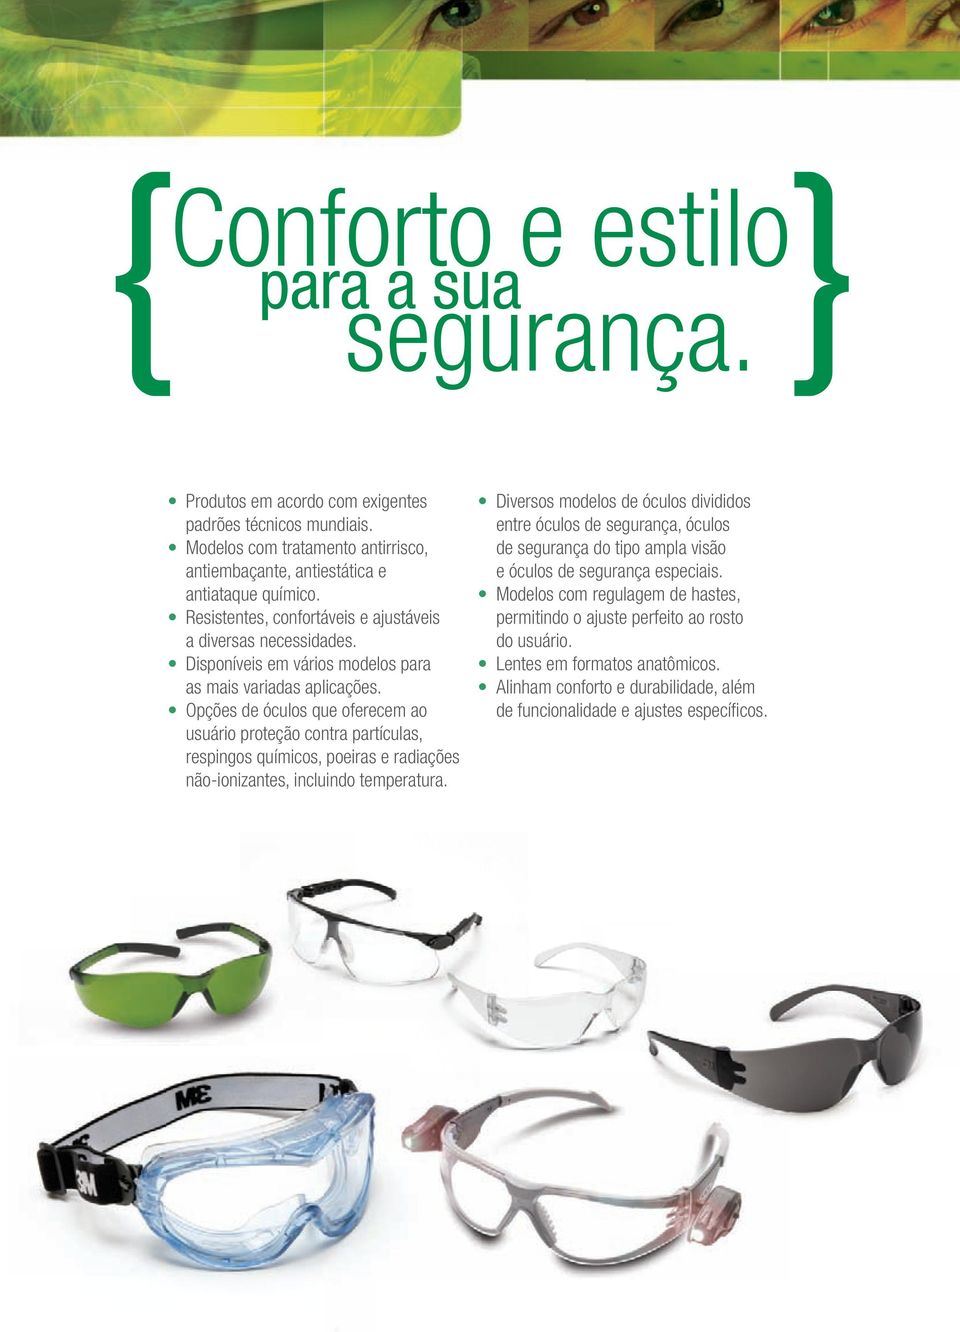 Opções de óculos que oferecem ao usuário proteção contra partículas, respingos químicos, poeiras e radiações não-ionizantes, incluindo temperatura.